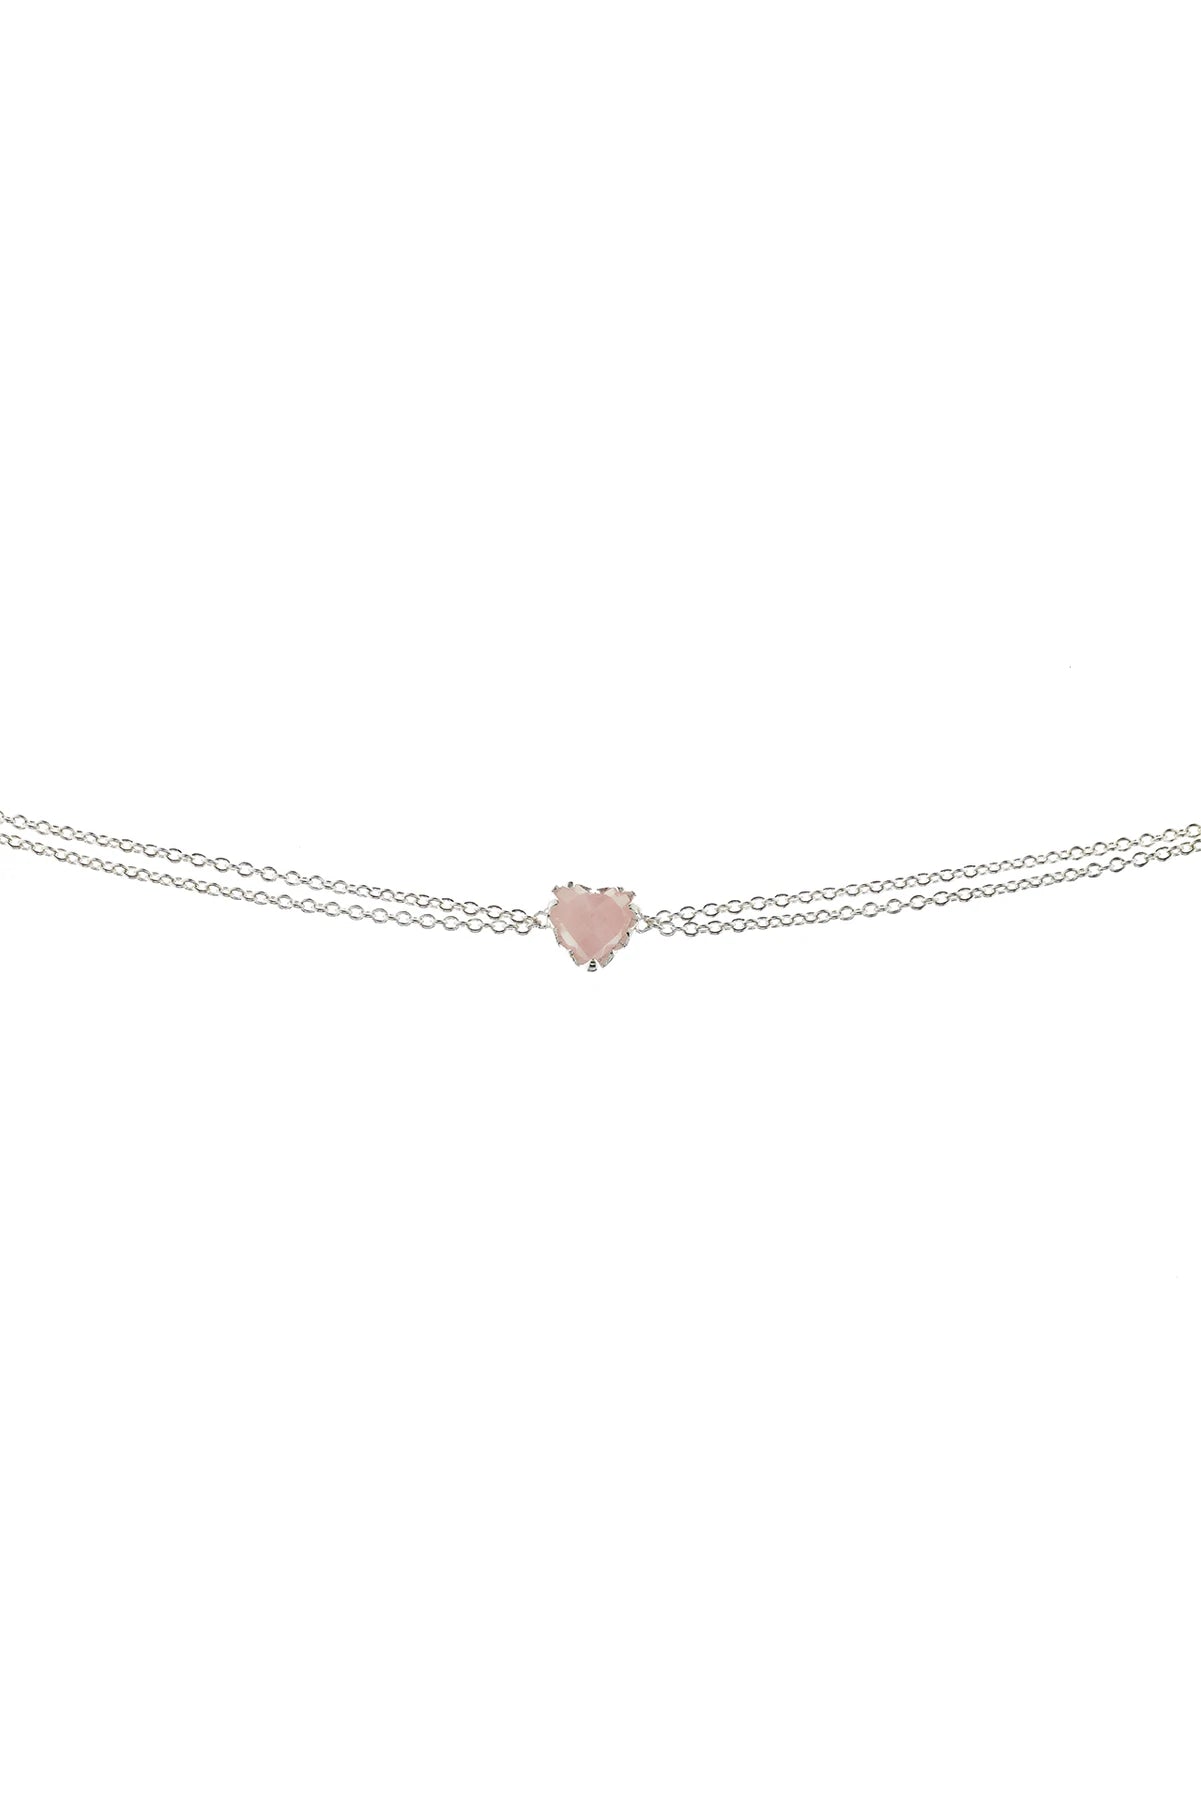 Stolen - Love Claw Bracelet - Rose Quartz